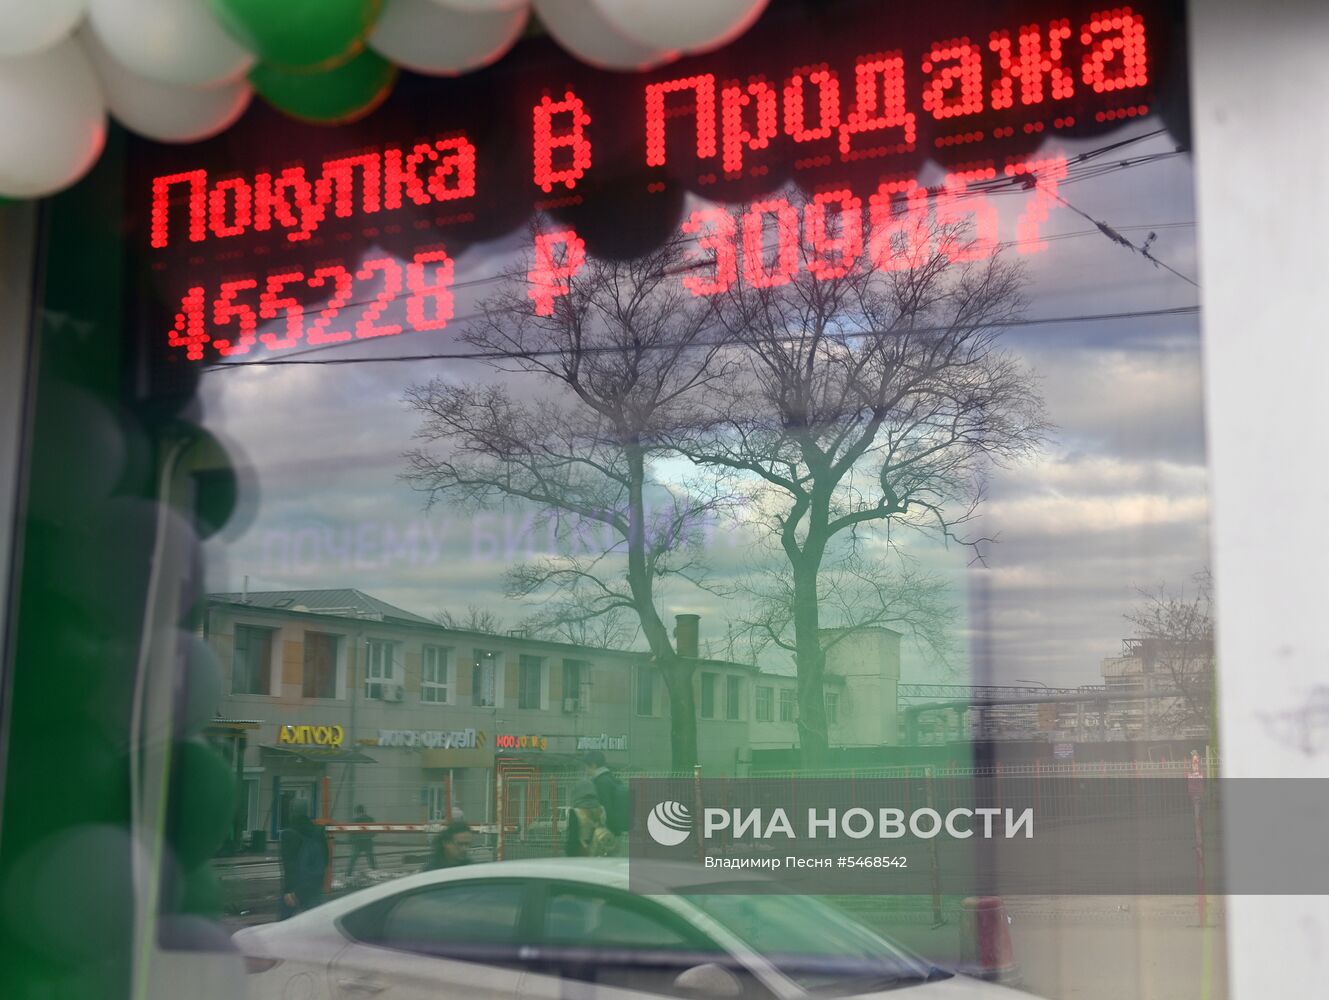 Первый российский криптообменник "Сберкоин" открылся в Москве